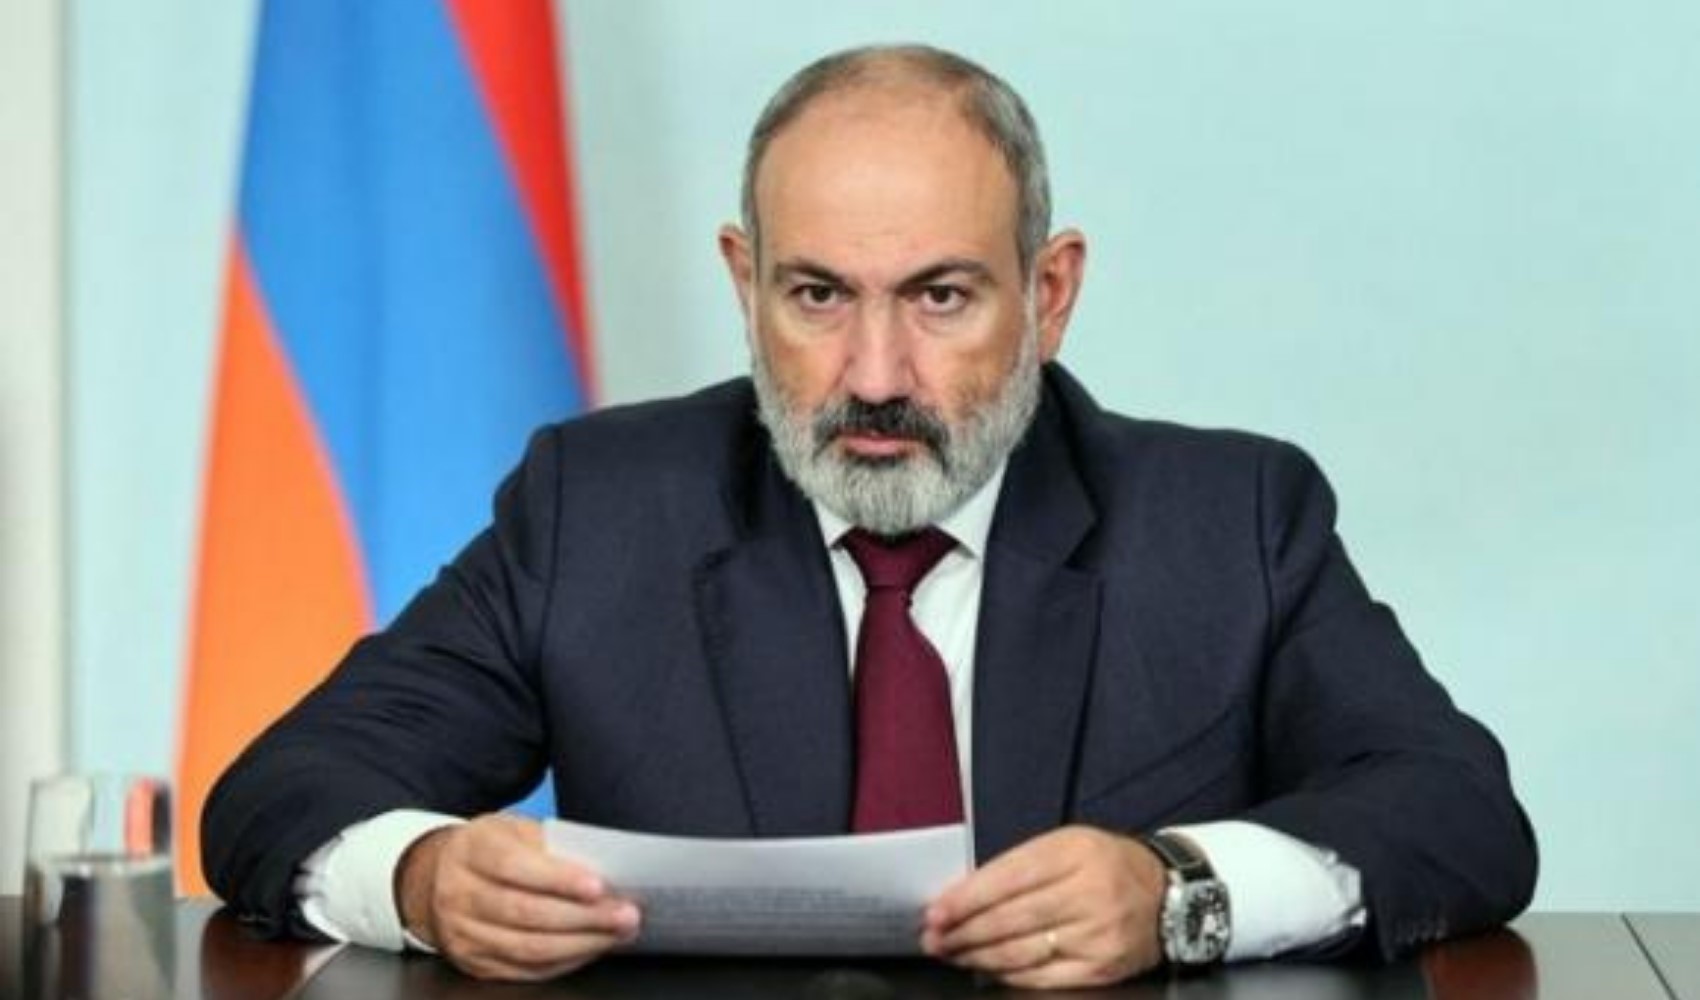 Ermenistan Başbakanı Paşinyan: 'Türkler, Ermenilere soykırım yapmadı'